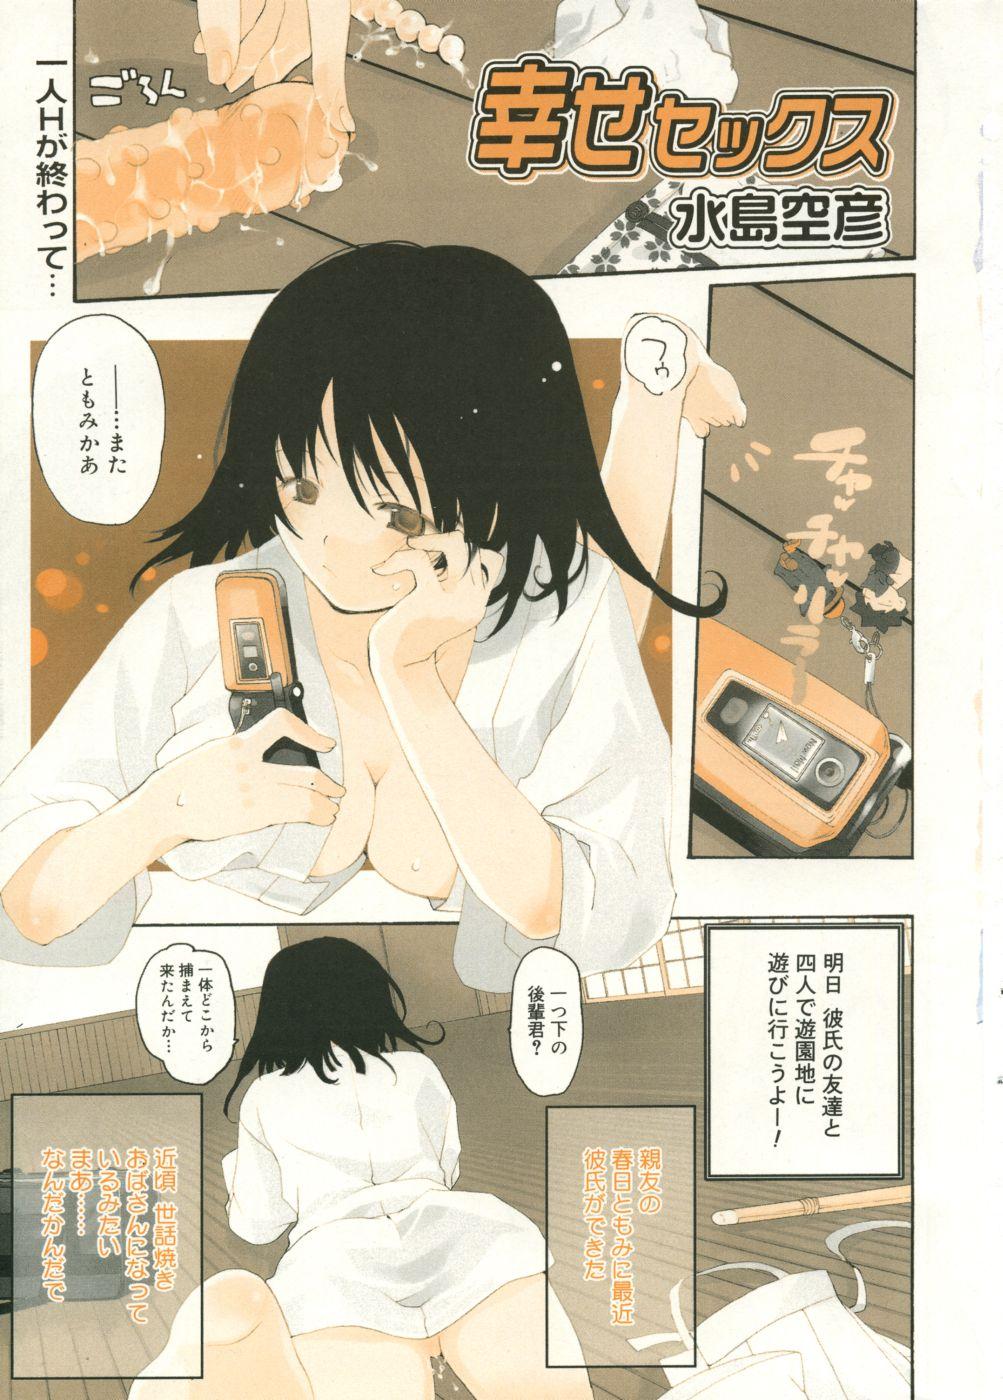 18 Year Old Manga Bangaichi 2005-09 Vol. 178 Hot Whores - Page 6